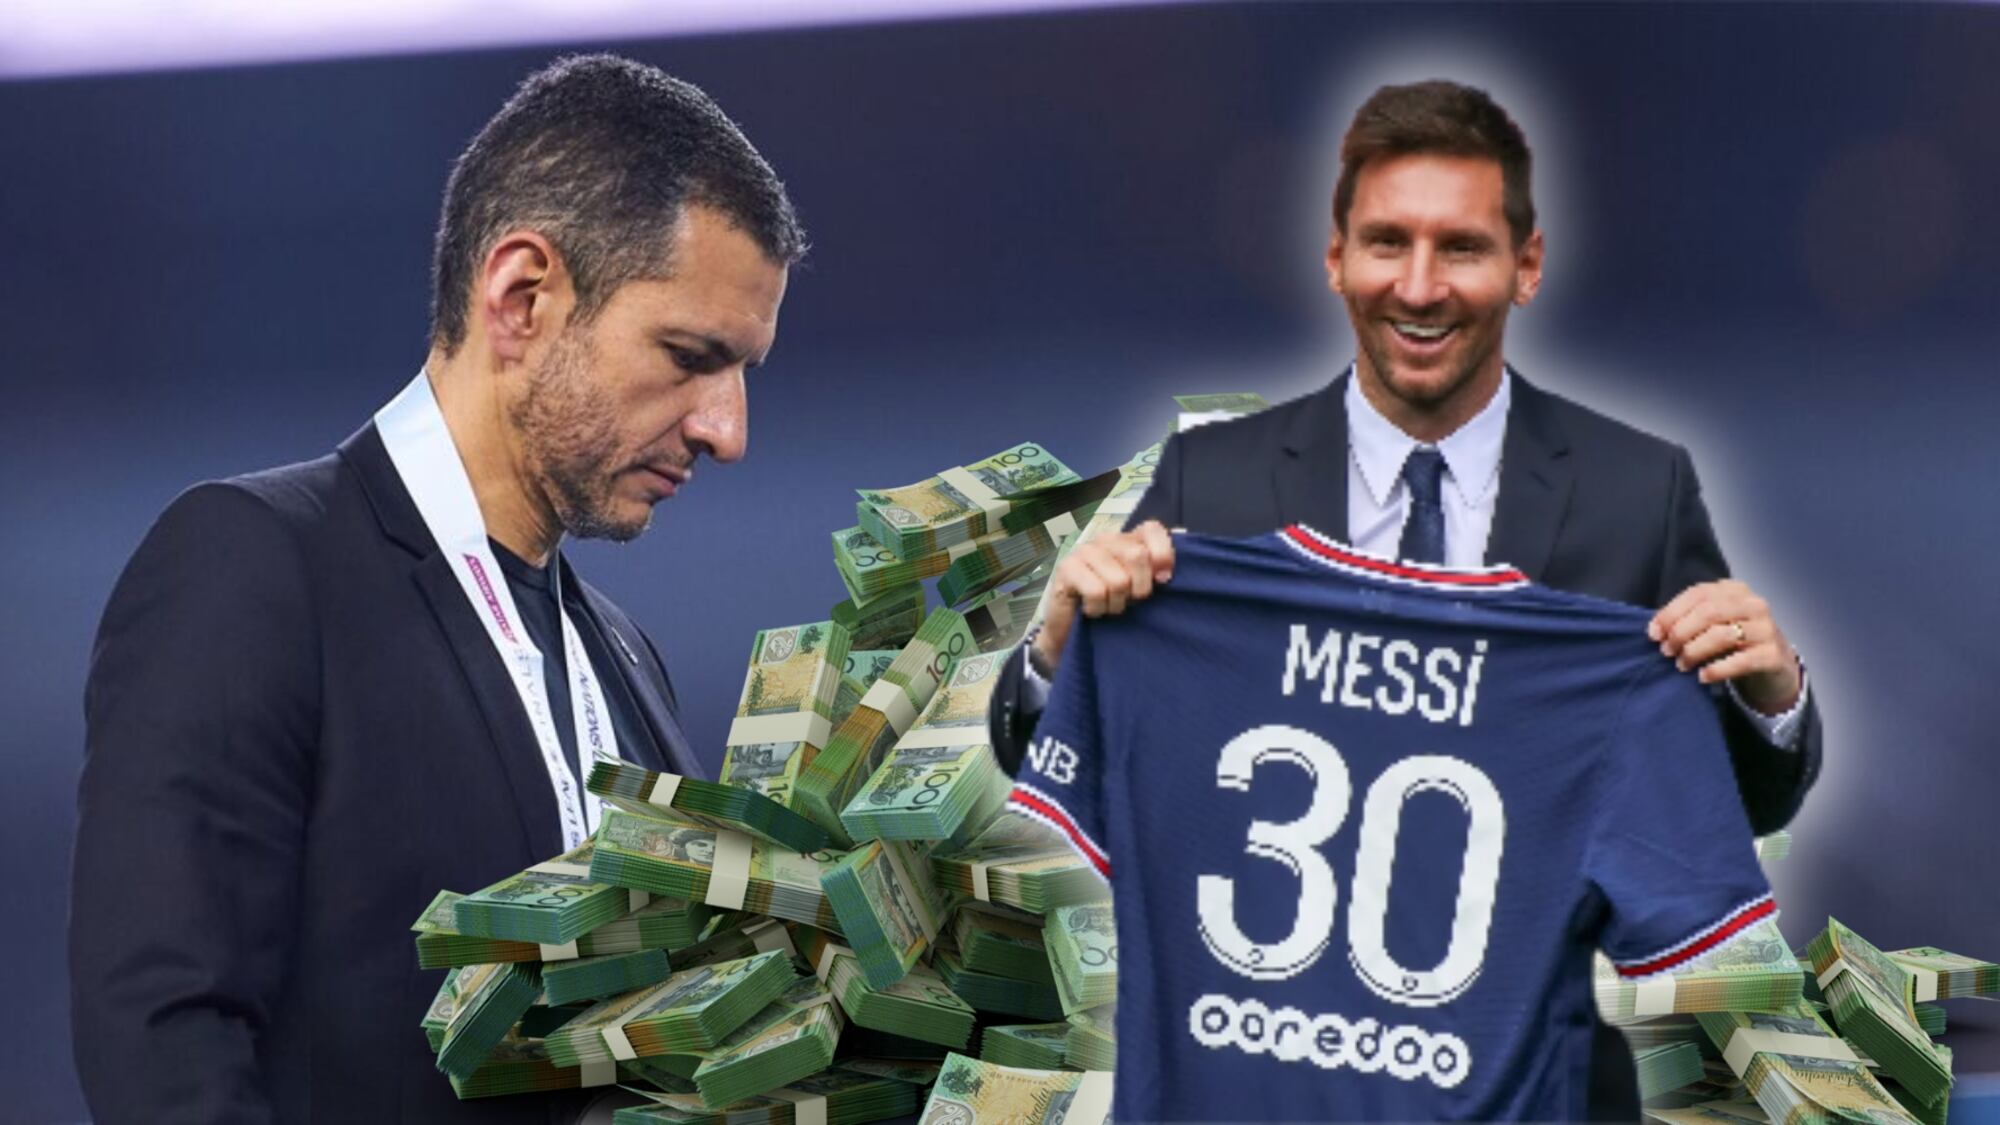 Tiene la playera de Messi, dejó a Jaime Lozano sin Mundial y ahora tiene una fortuna de 700 millones